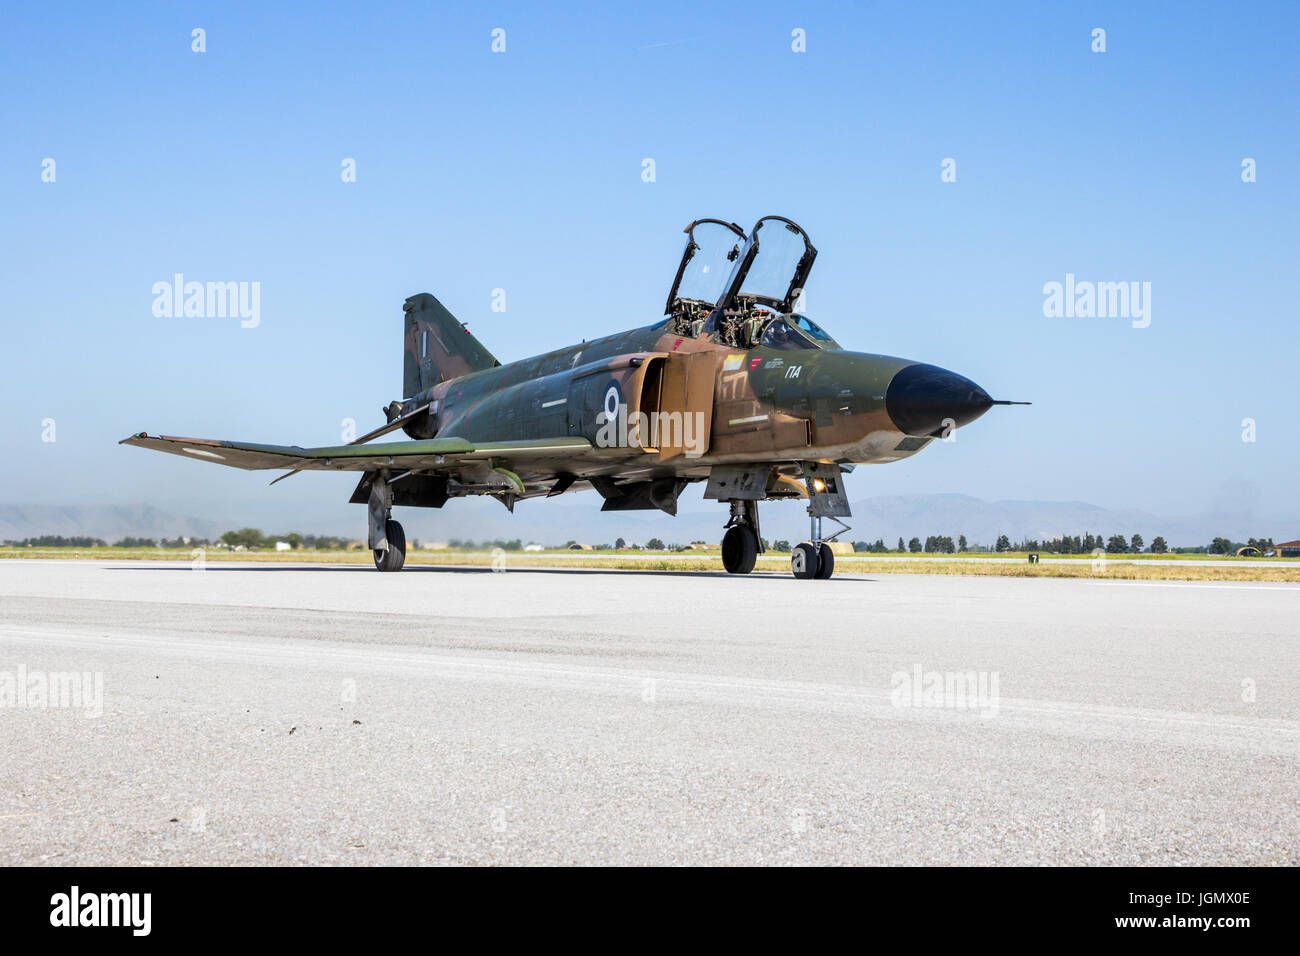 LARISSA, Grecia - 4 Maggio 2017: Hellenic Air Force RF-4E Phantom II jet da combattimento aereo in rullaggio dopo uno dei suoi ultimi voli. 348 Squadro di ricognizione Foto Stock